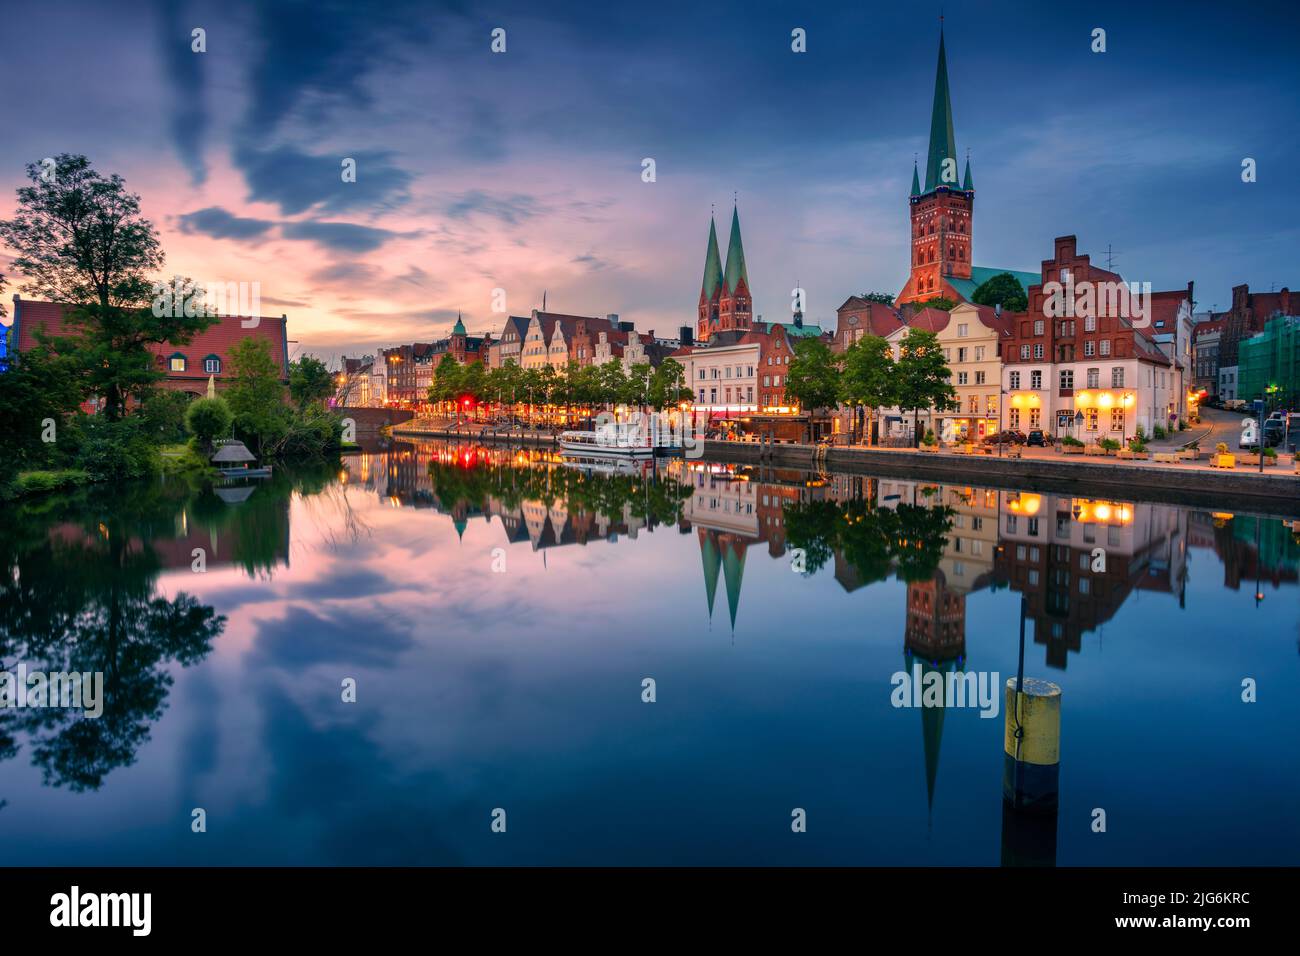 Lubeck, Alemania. Imagen del paisaje urbano del río Lubeck con reflejo de la ciudad en el río Trave al atardecer. Foto de stock